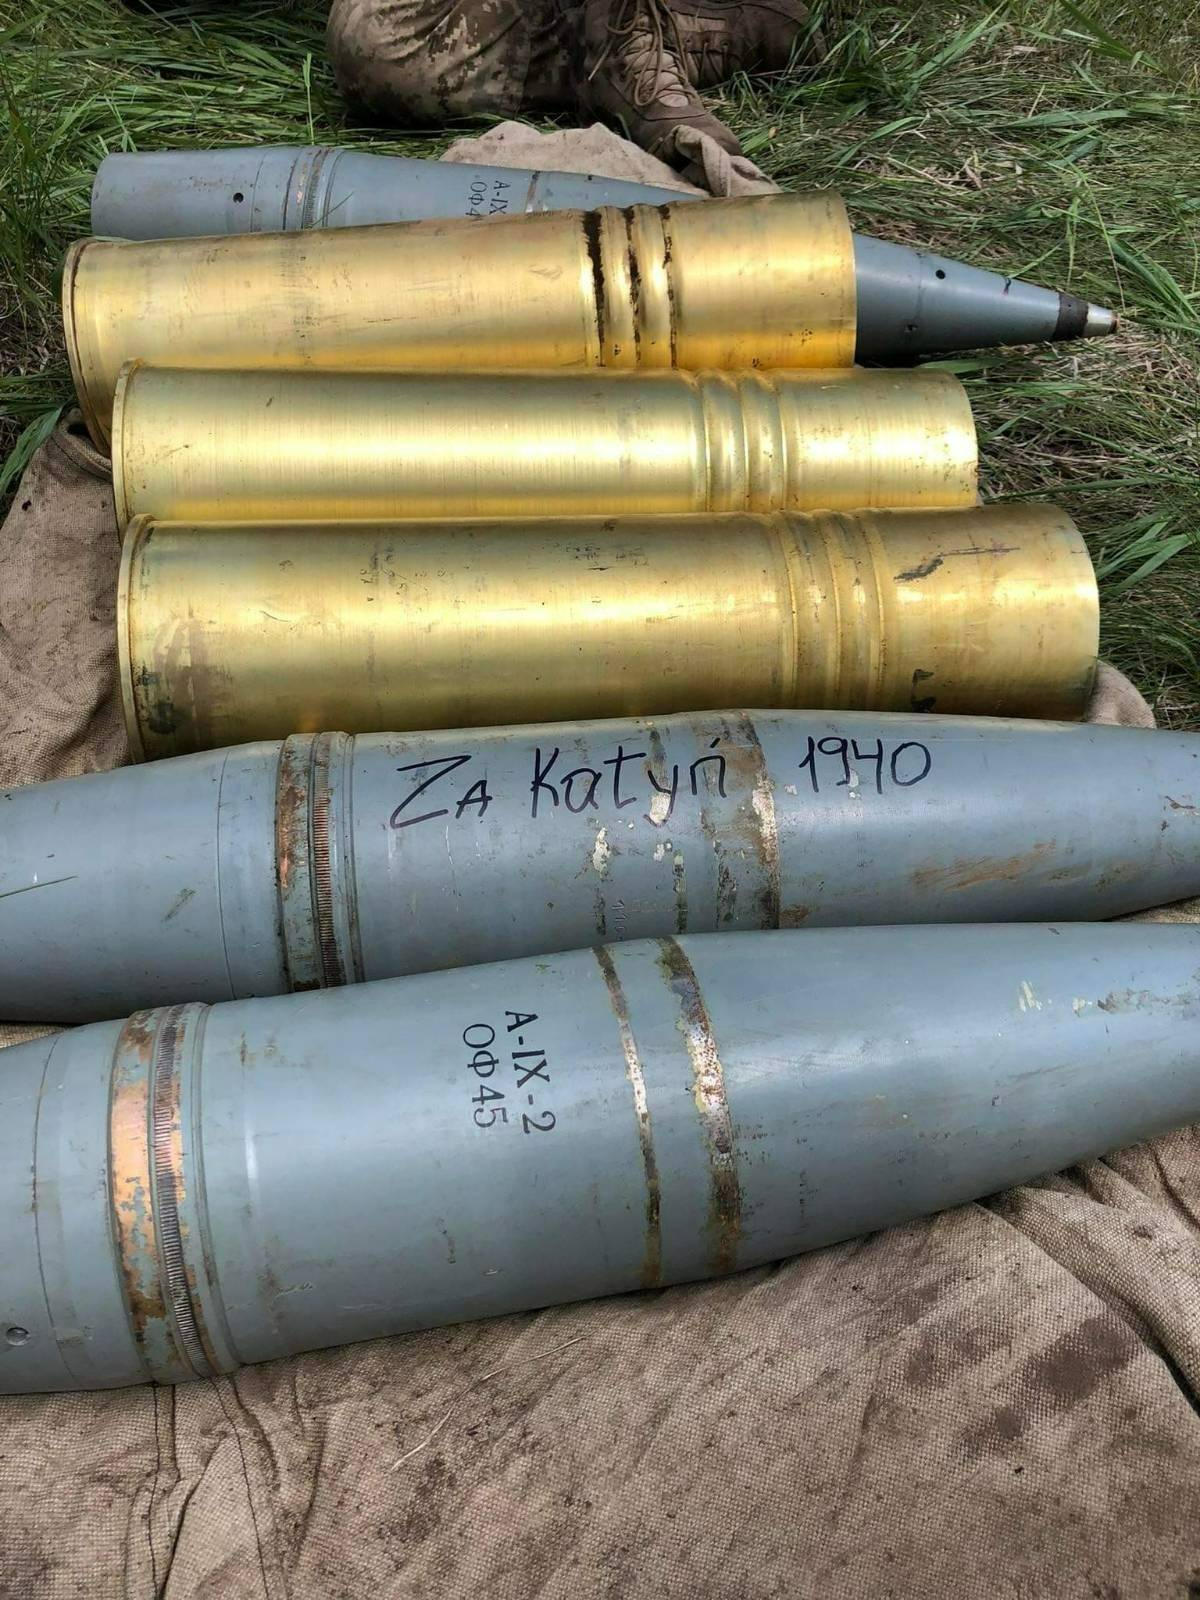 [分享] 烏克蘭的砲彈上出現為了卡廷森林的字樣